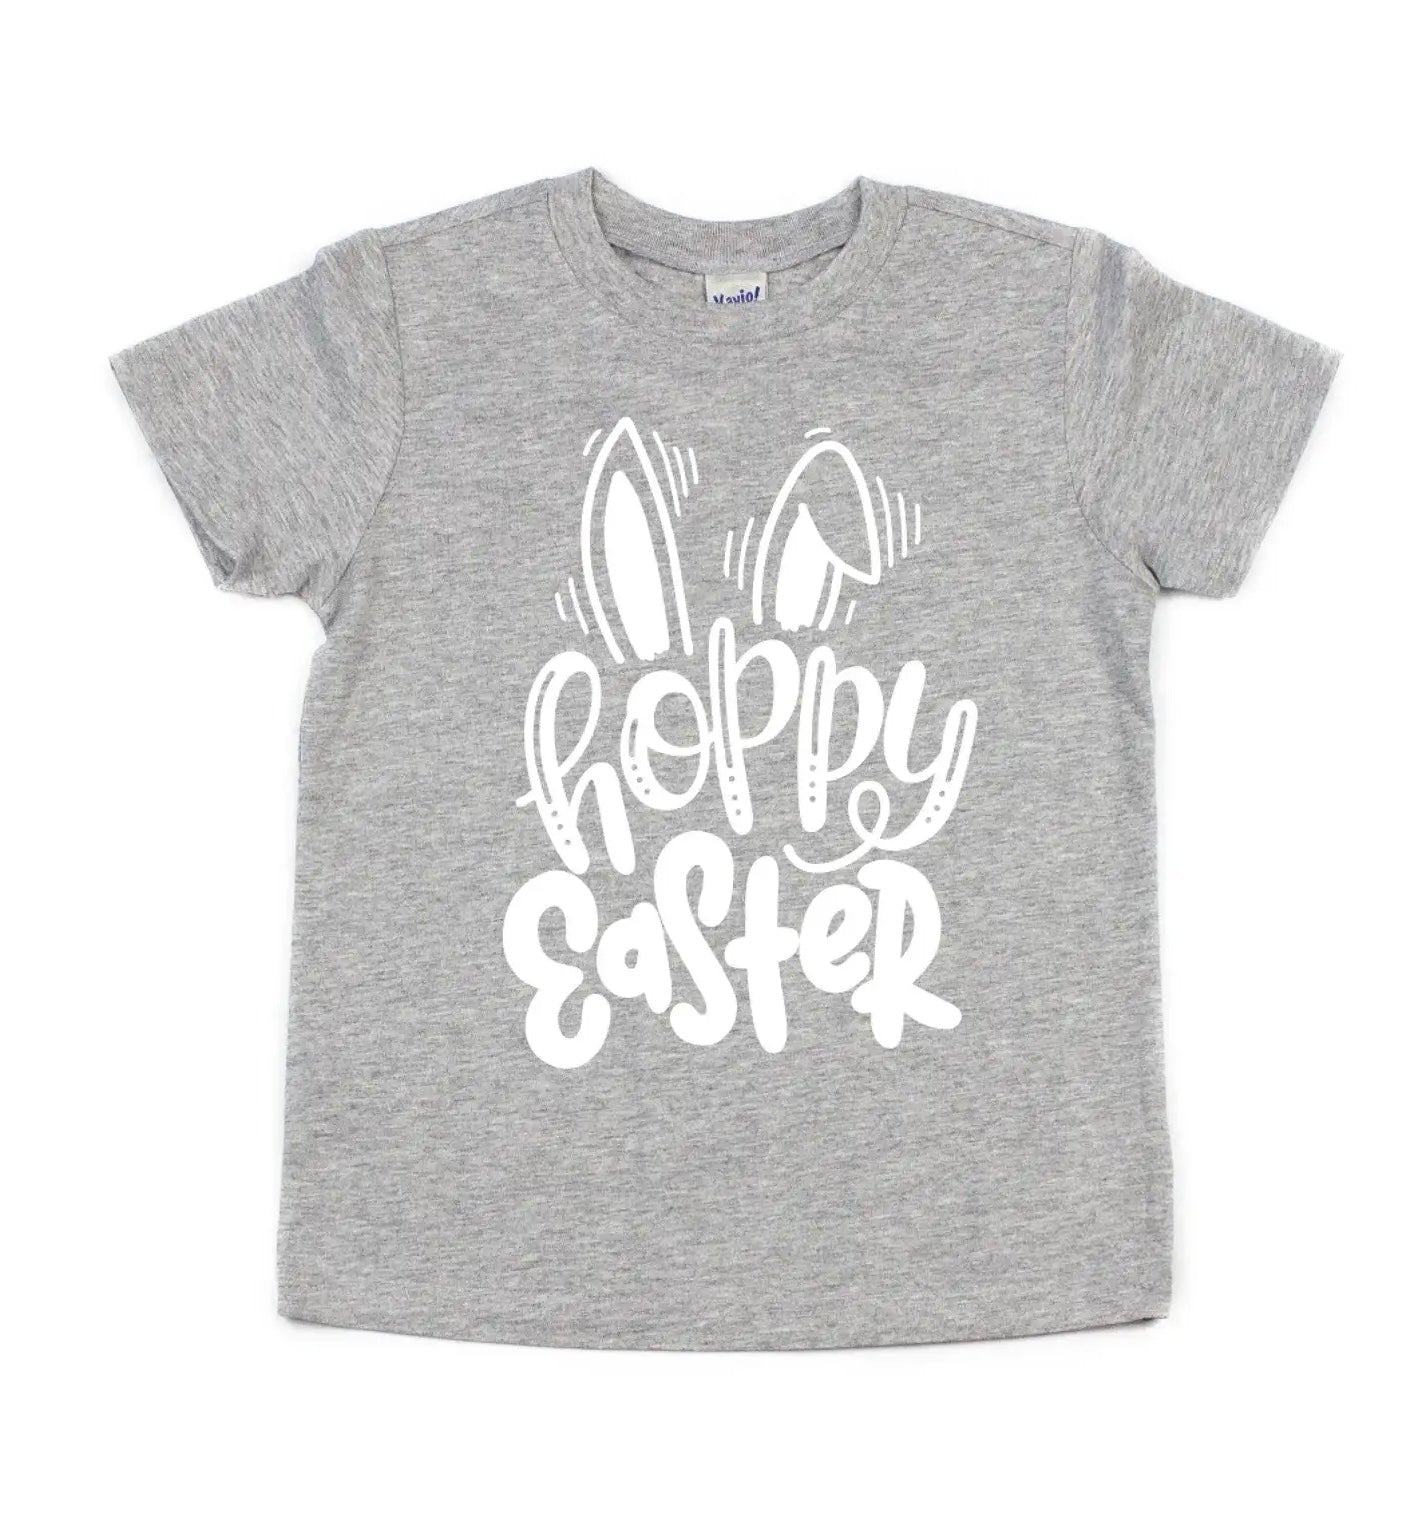 Hoppy Easter tee